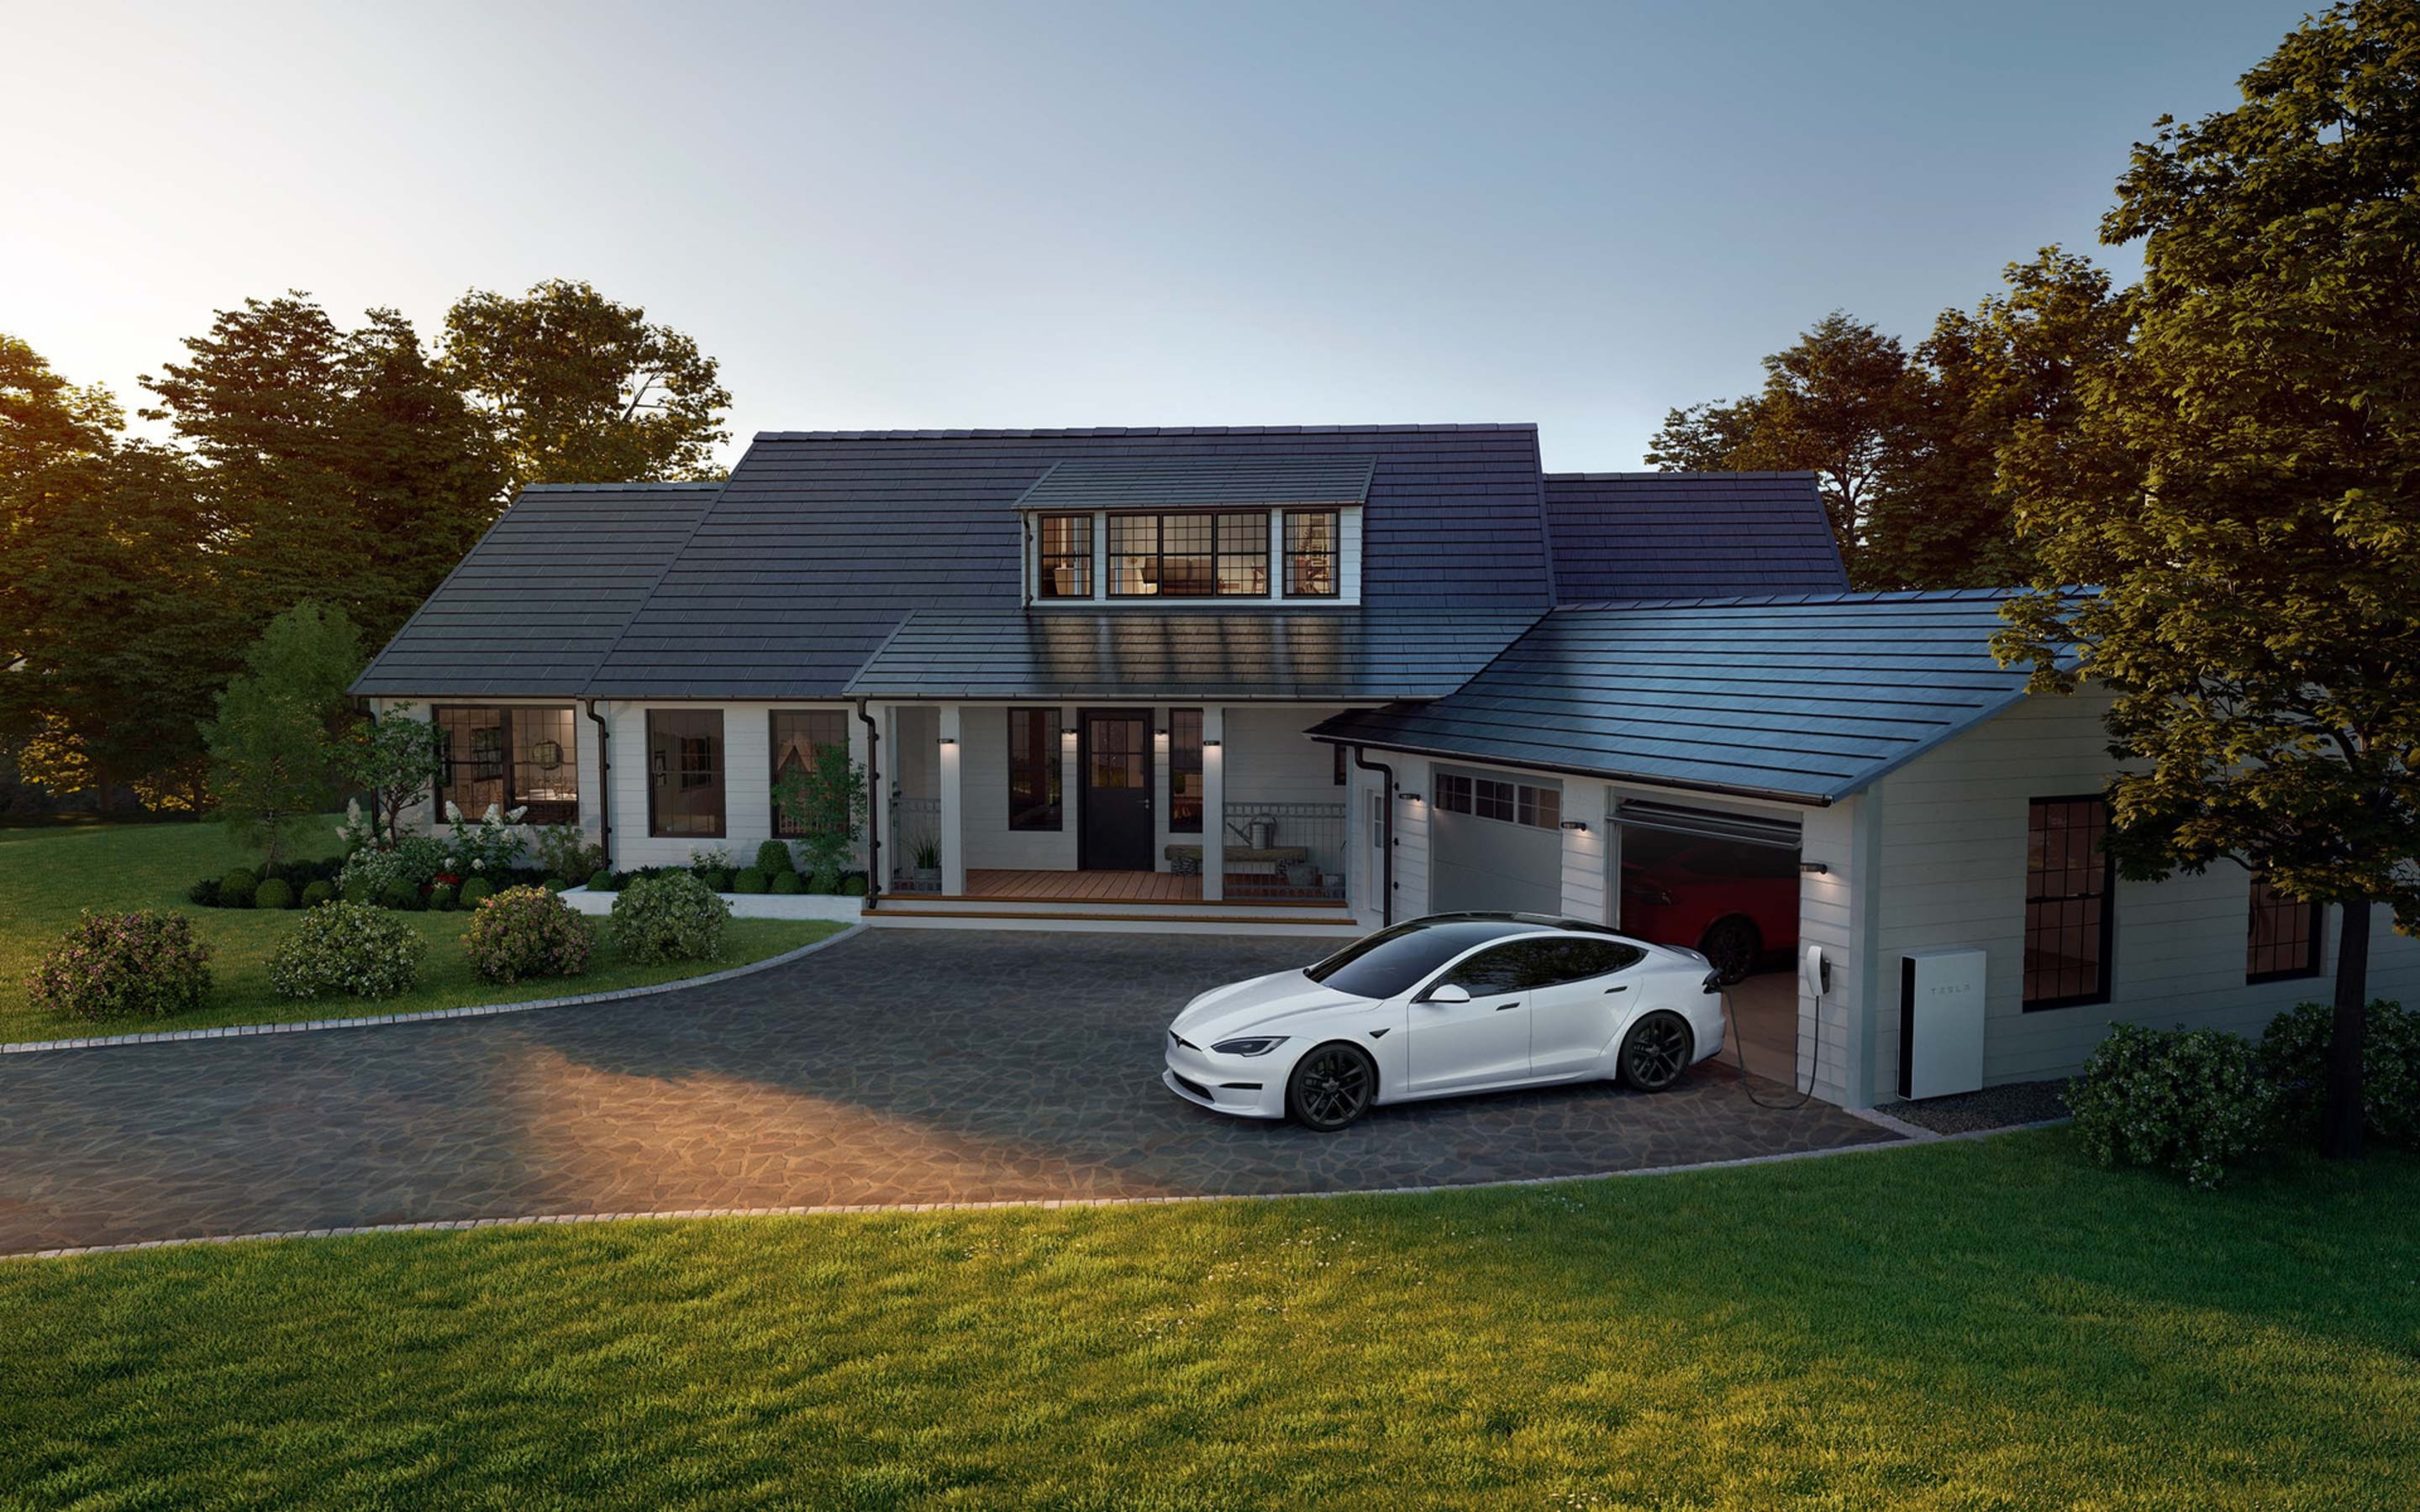 白色 Model S 在住家車道上透過壁掛式充電座充電